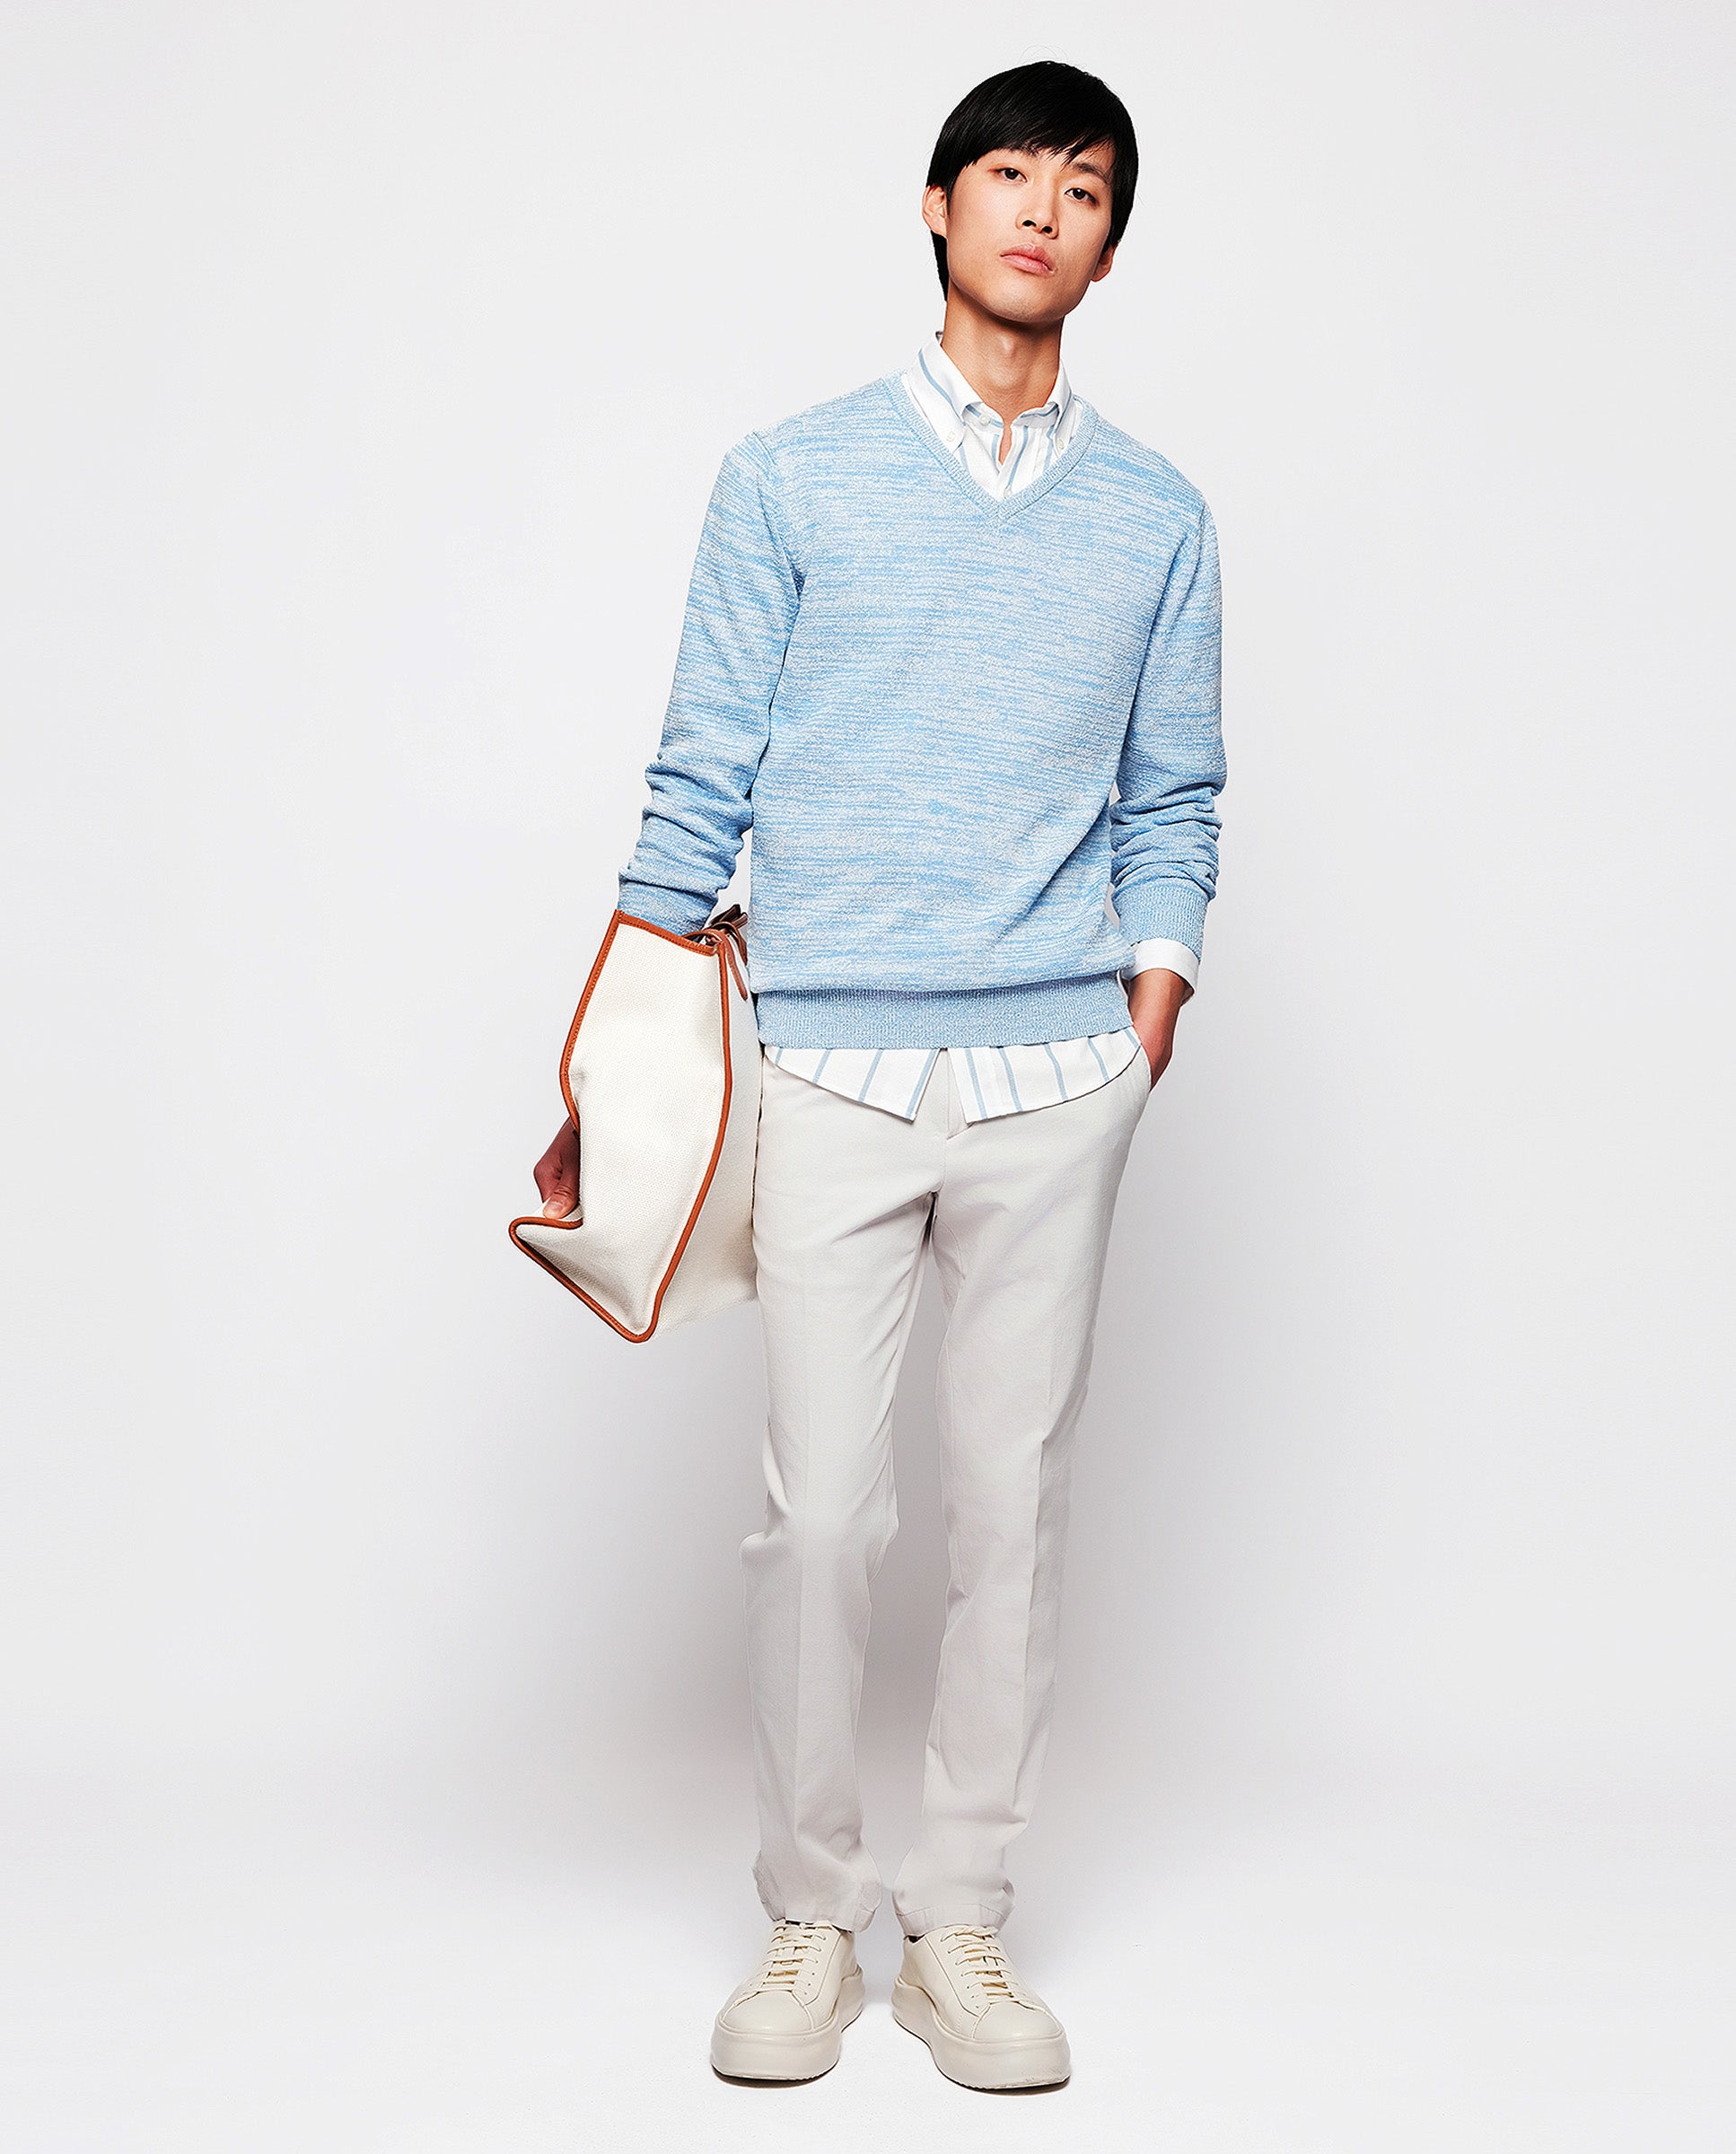 Camisa casual de algodón rayas azul y blanco by MI